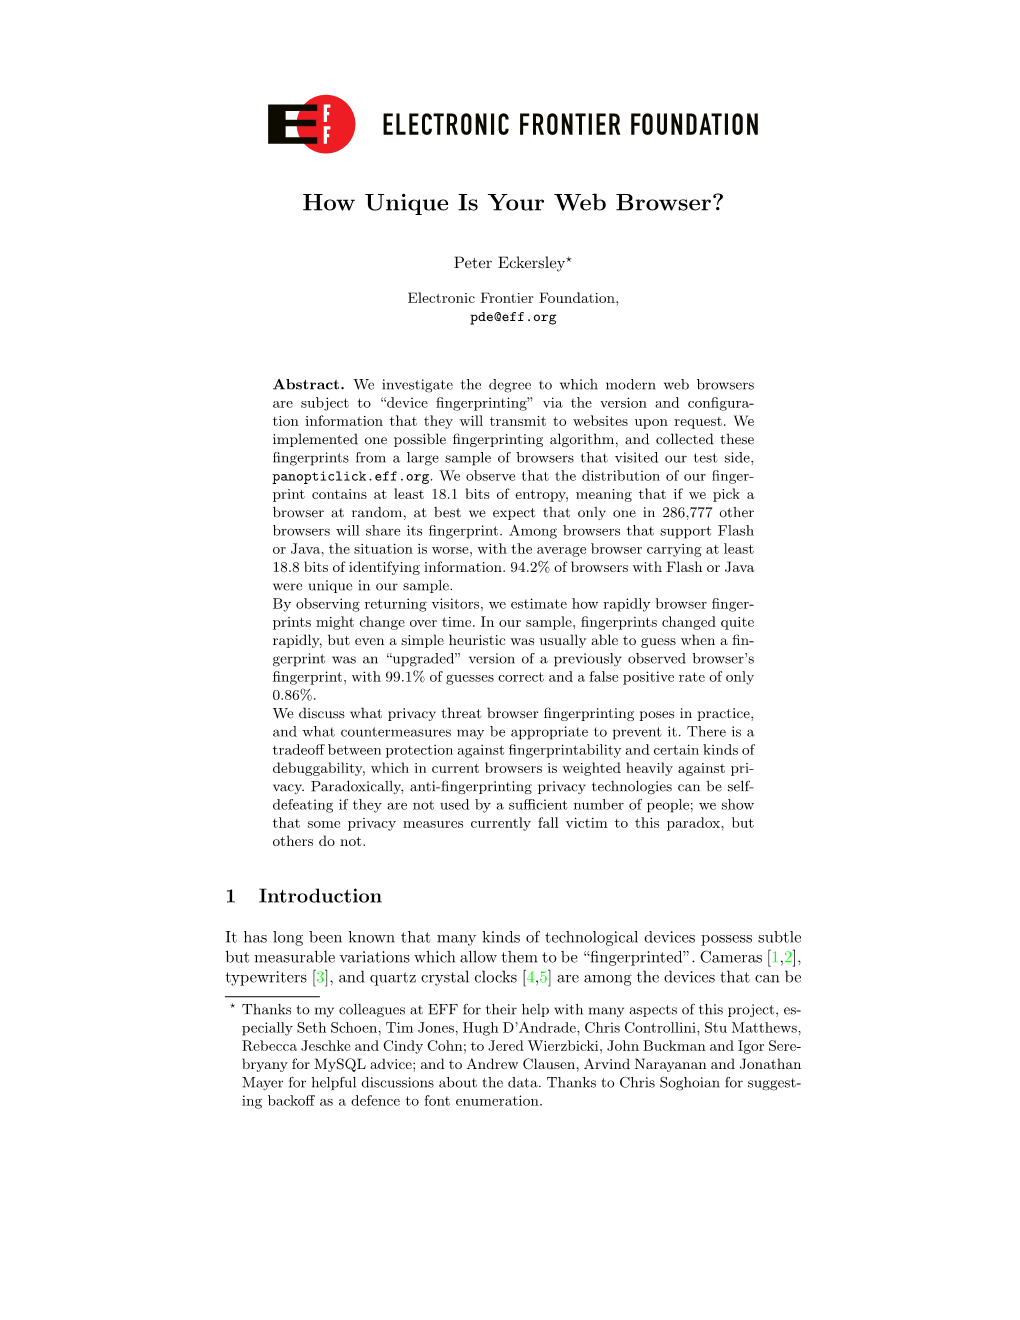 “How Unique Is Your Web Browser?” (PDF)